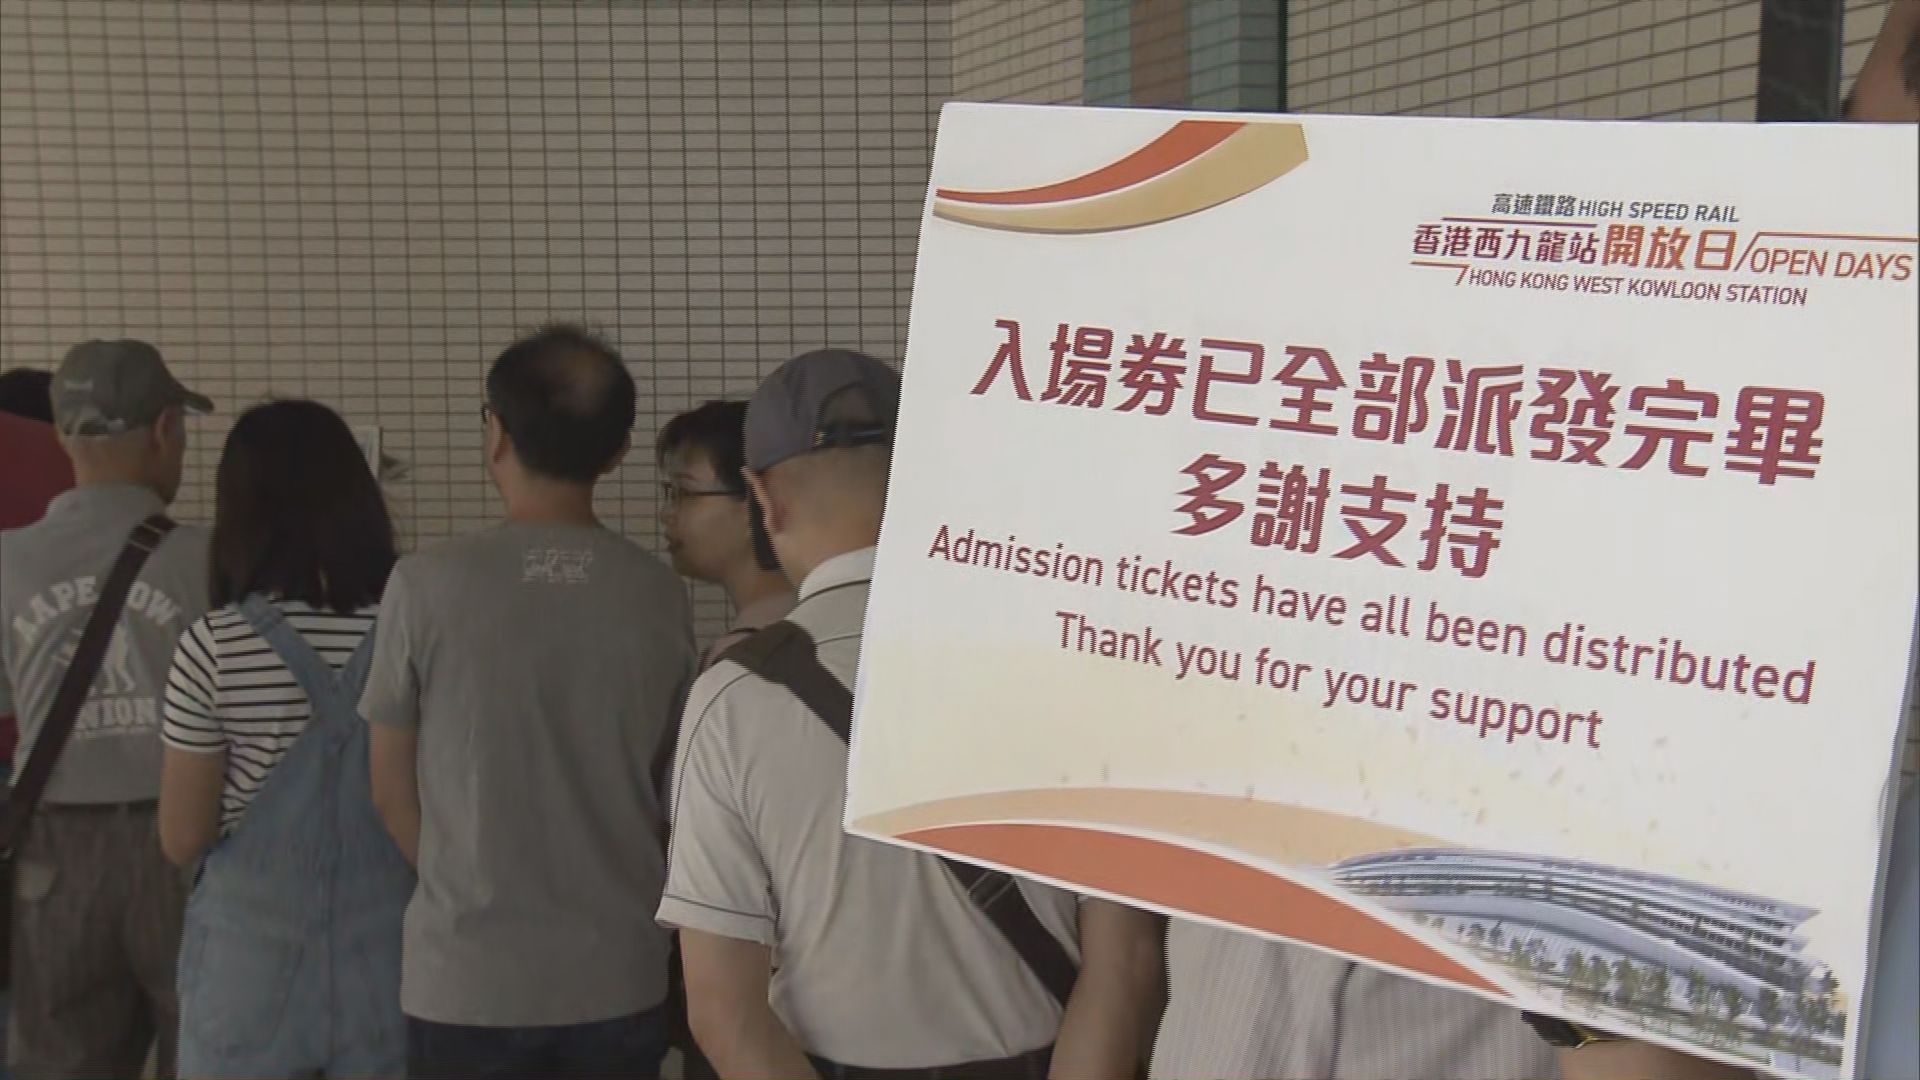 高鐵西九龍總站開放日兩萬張門票已派完